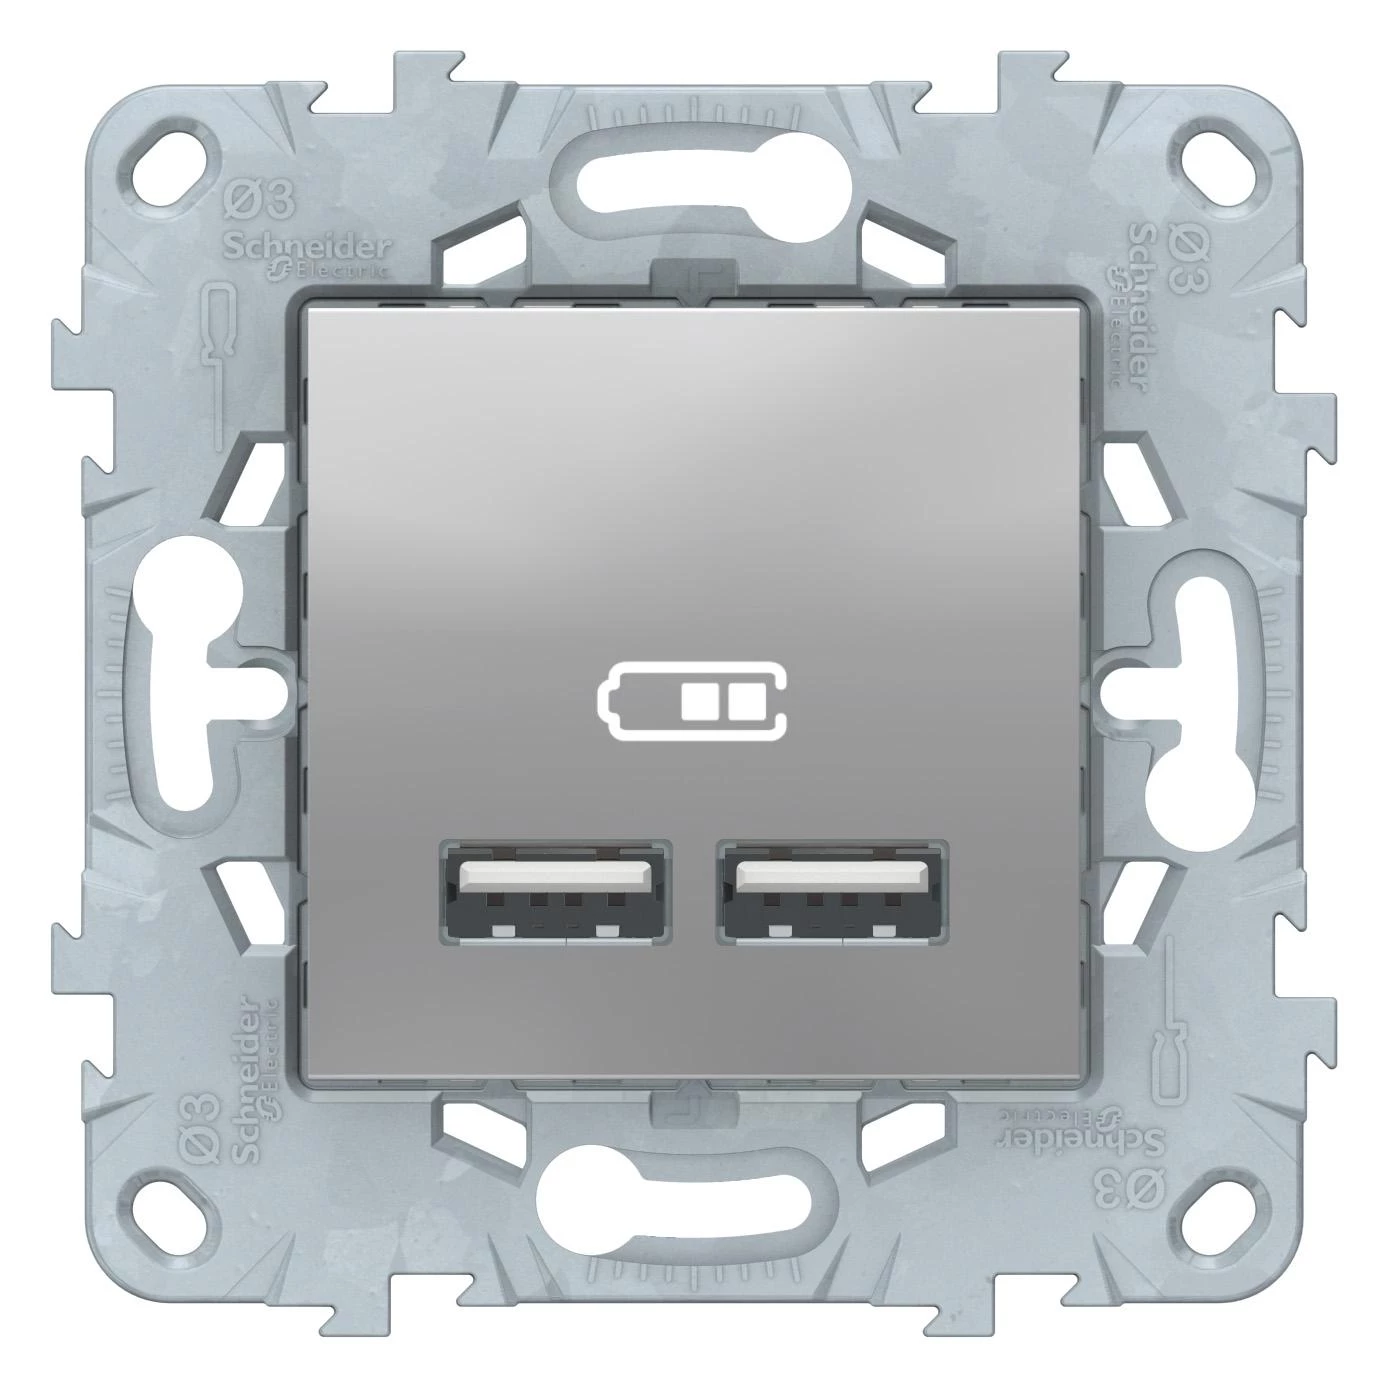  артикул NU541830 название Зарядное устройство USB с двумя выходами , Алюминий, серия Unica New, Schneider Electric